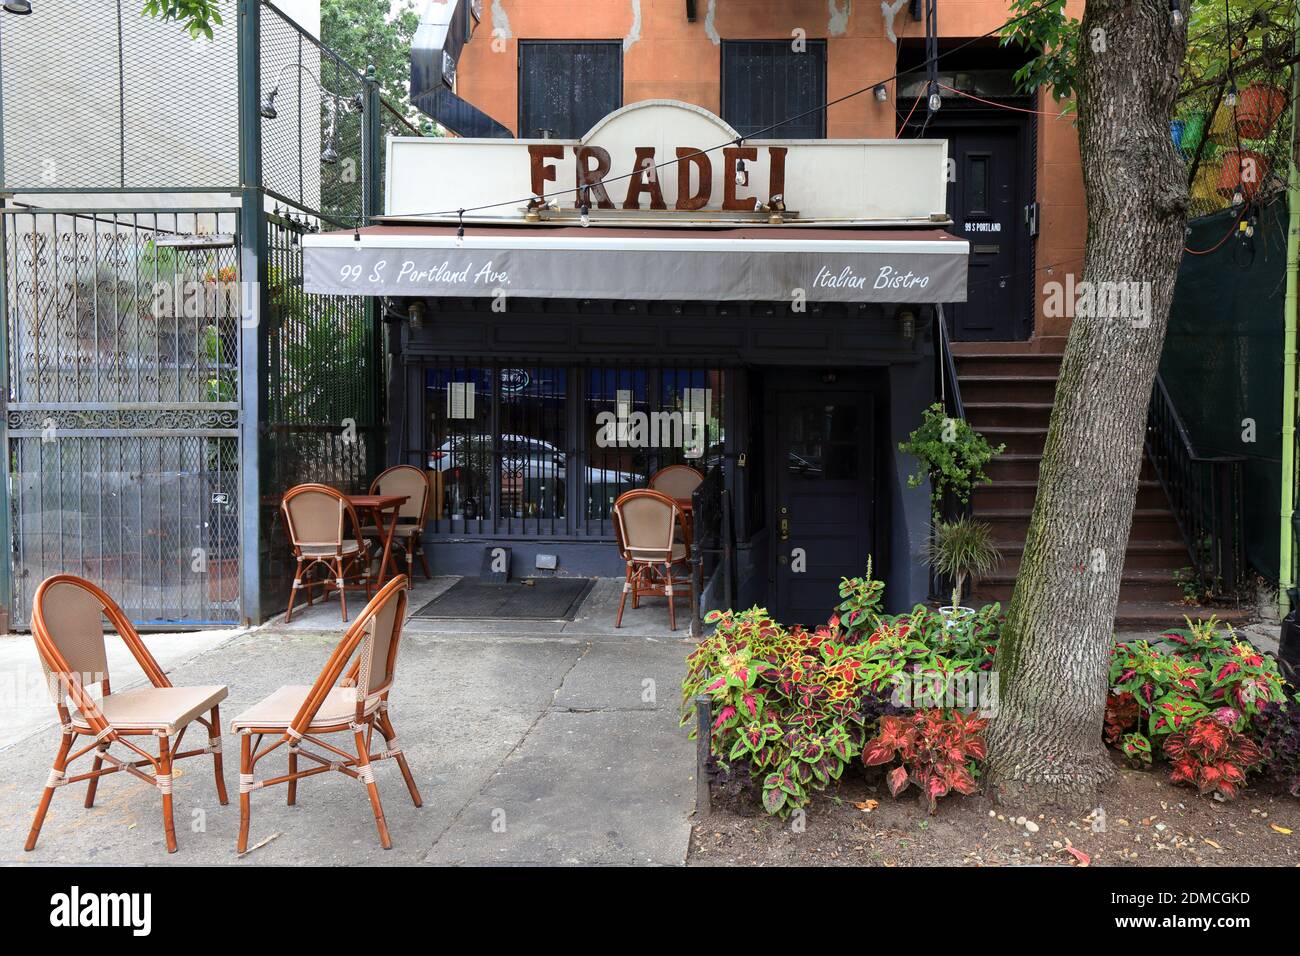 Fradei Bistro, 99 S Portland Ave, Brooklyn, New York. NYC-Schaufensterfoto eines italienischen Restaurants im Viertel Fort Greene. Stockfoto